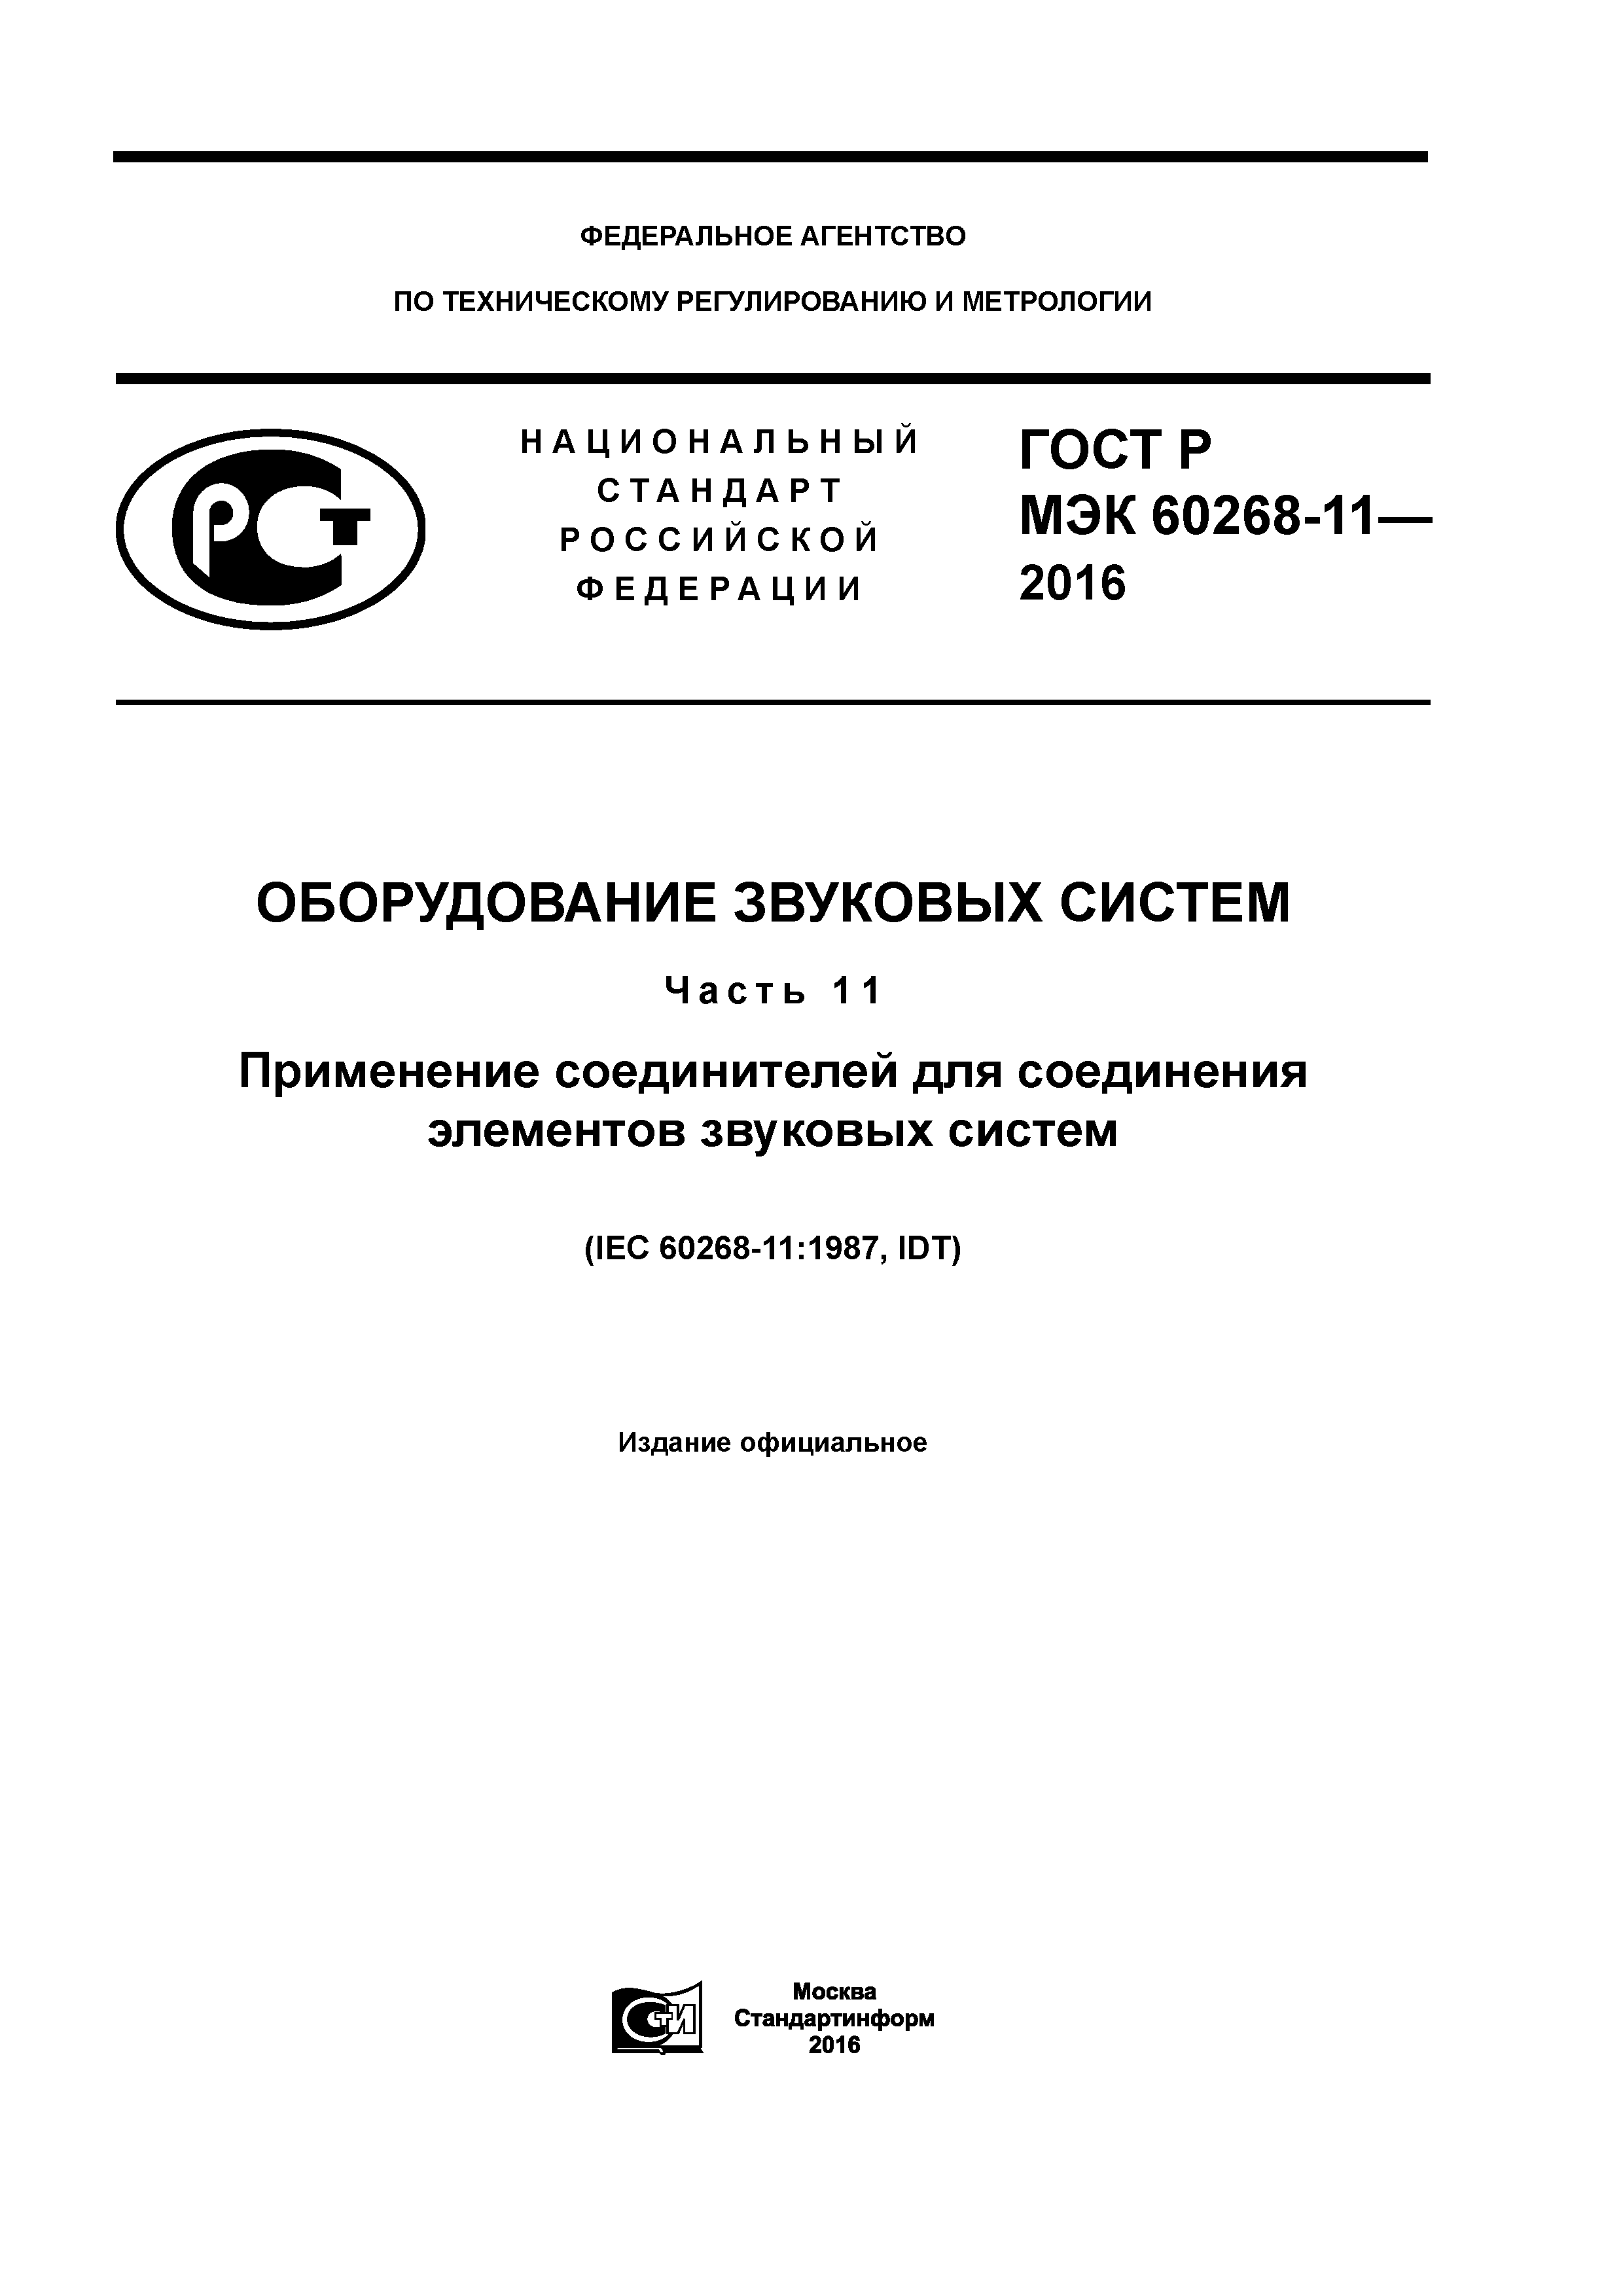 ГОСТ Р МЭК 60268-11-2016